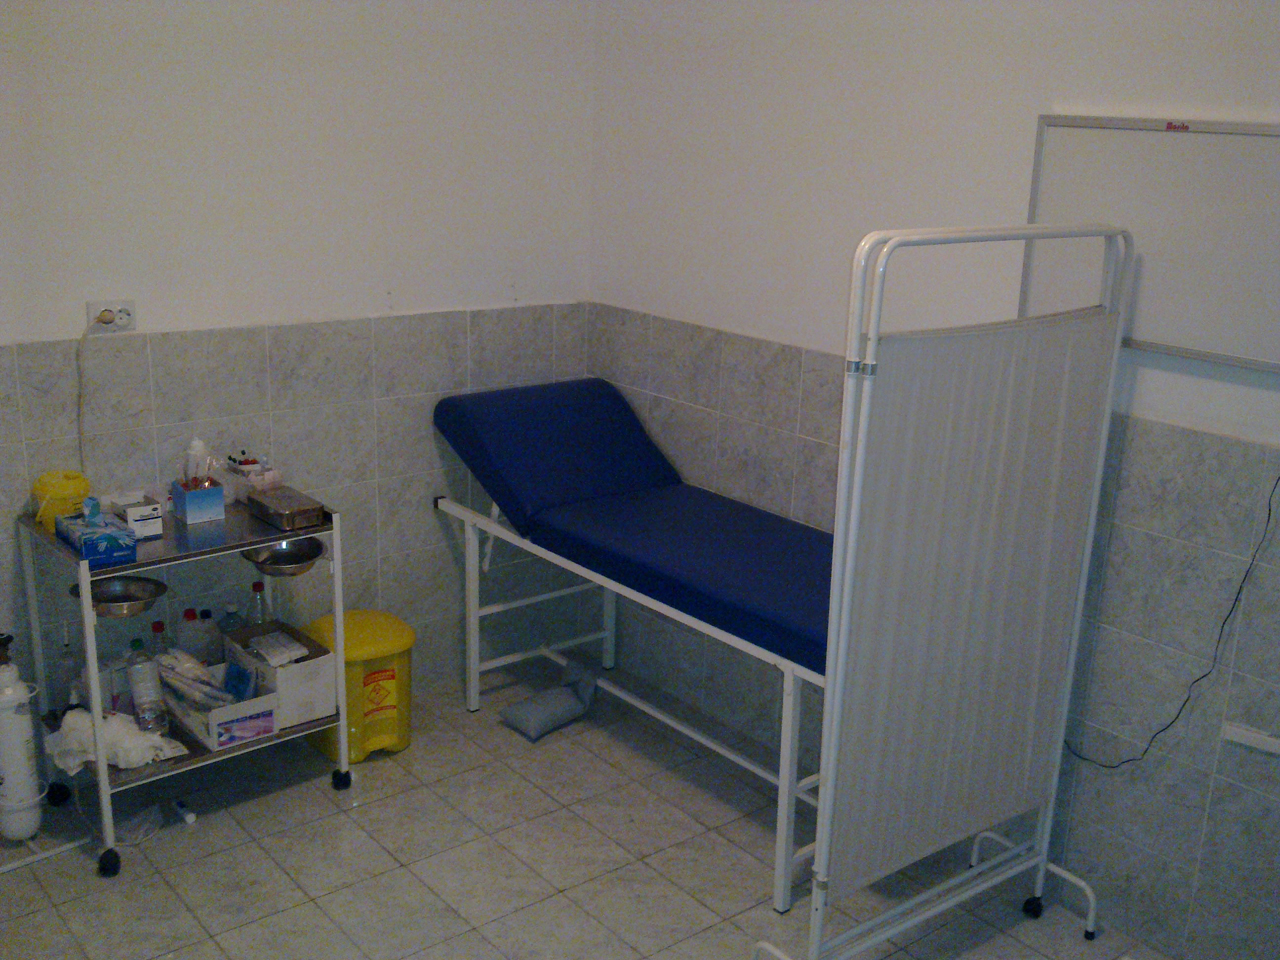 Photo 3 - DOM ZA STARE JELADOM Homes and care for the elderly Belgrade